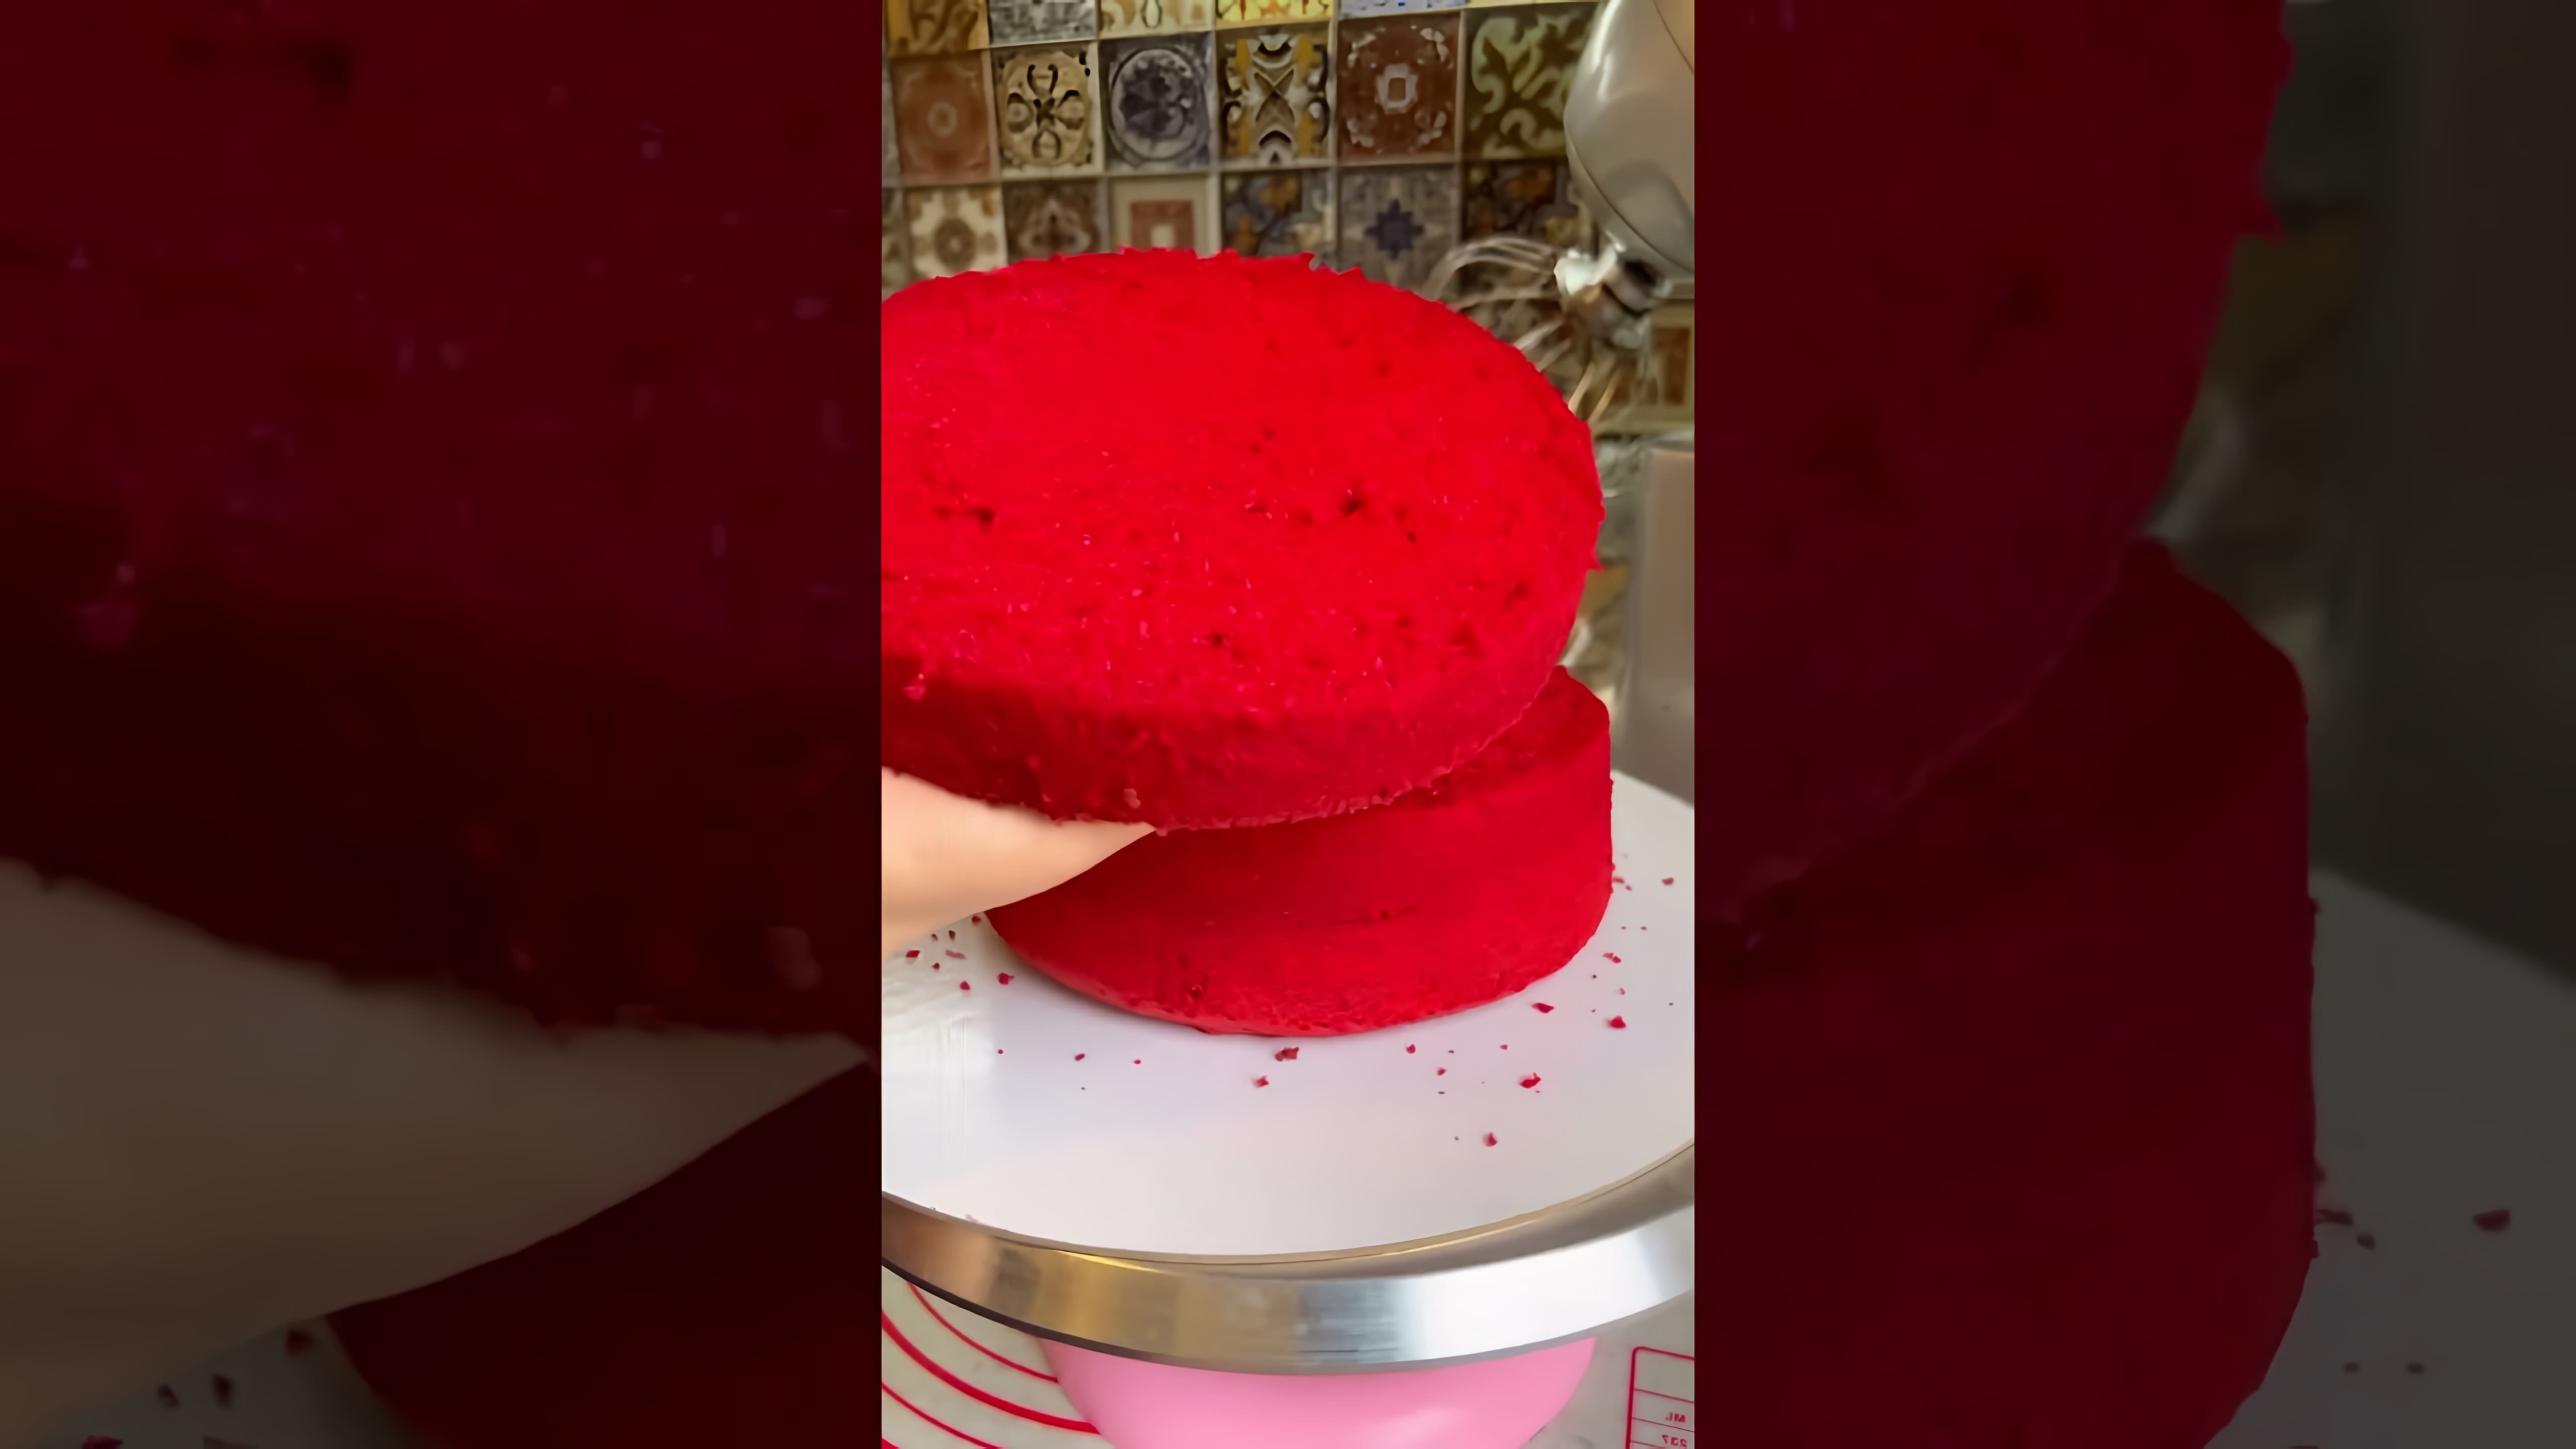 В данном видео демонстрируется процесс приготовления десерта в виде красного бархата